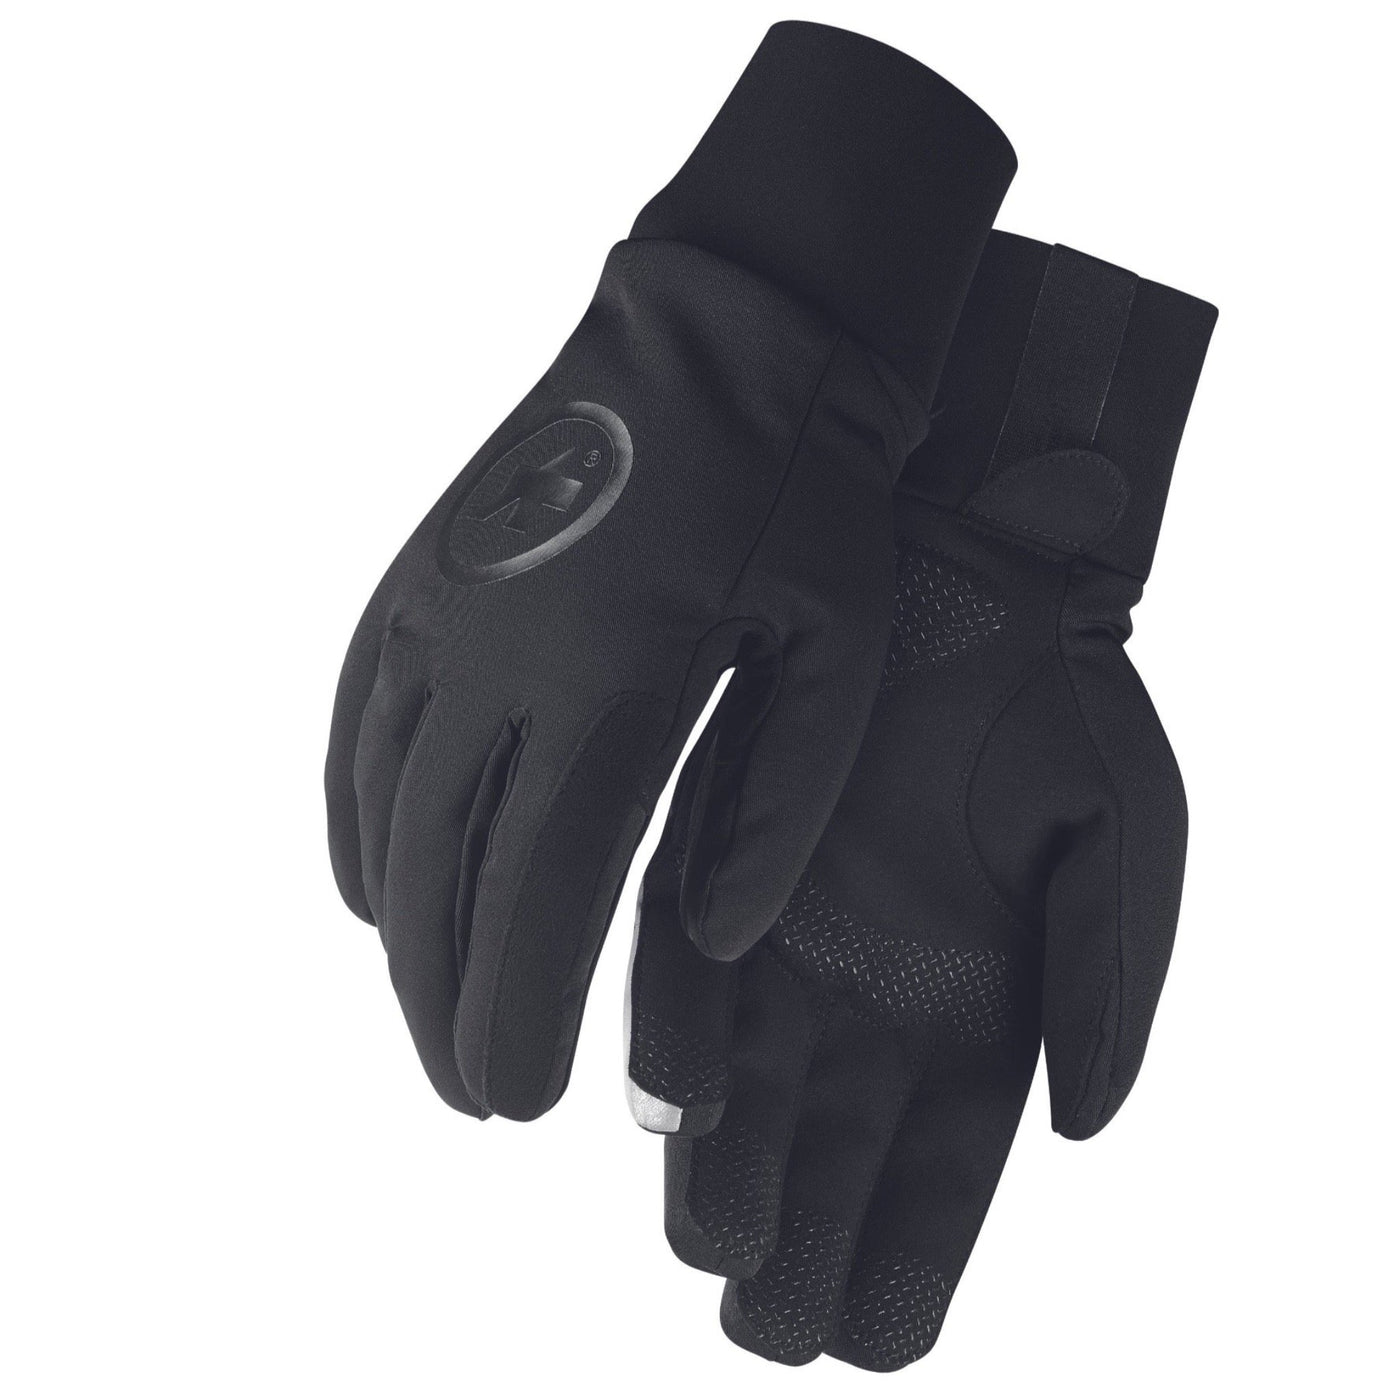 ASSOS Ultraz Winter Gloves - Vinter cykelhandsker